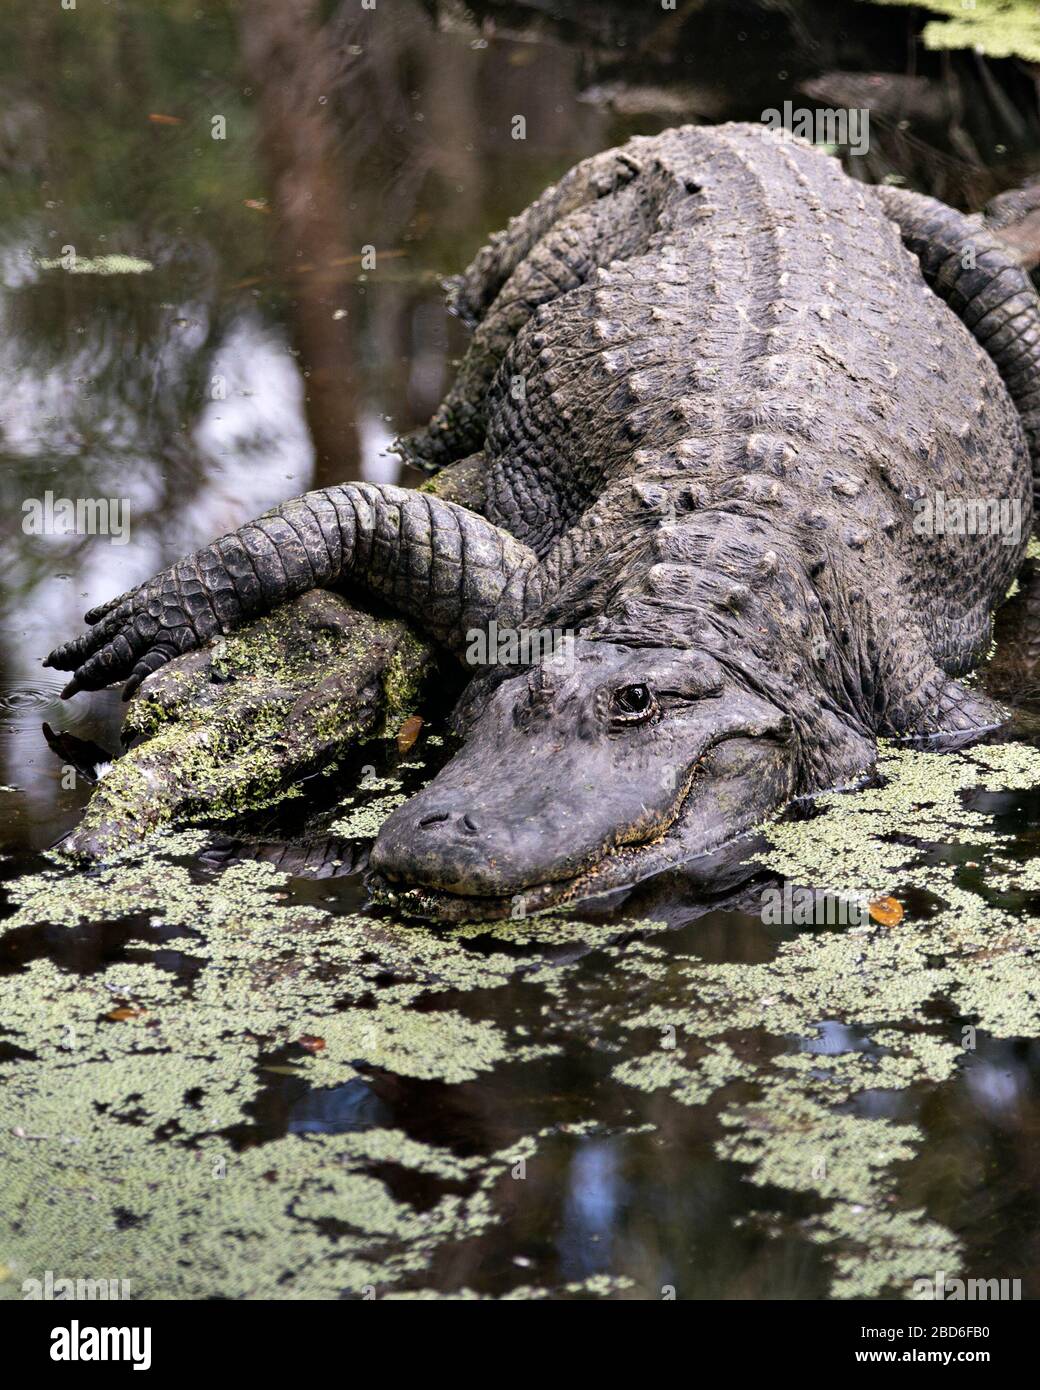 Vue de profil rapprochée des alligators affichant la tête, les dents, le nez, les yeux, la queue, la patte, dans ses environs et dans son environnement Banque D'Images